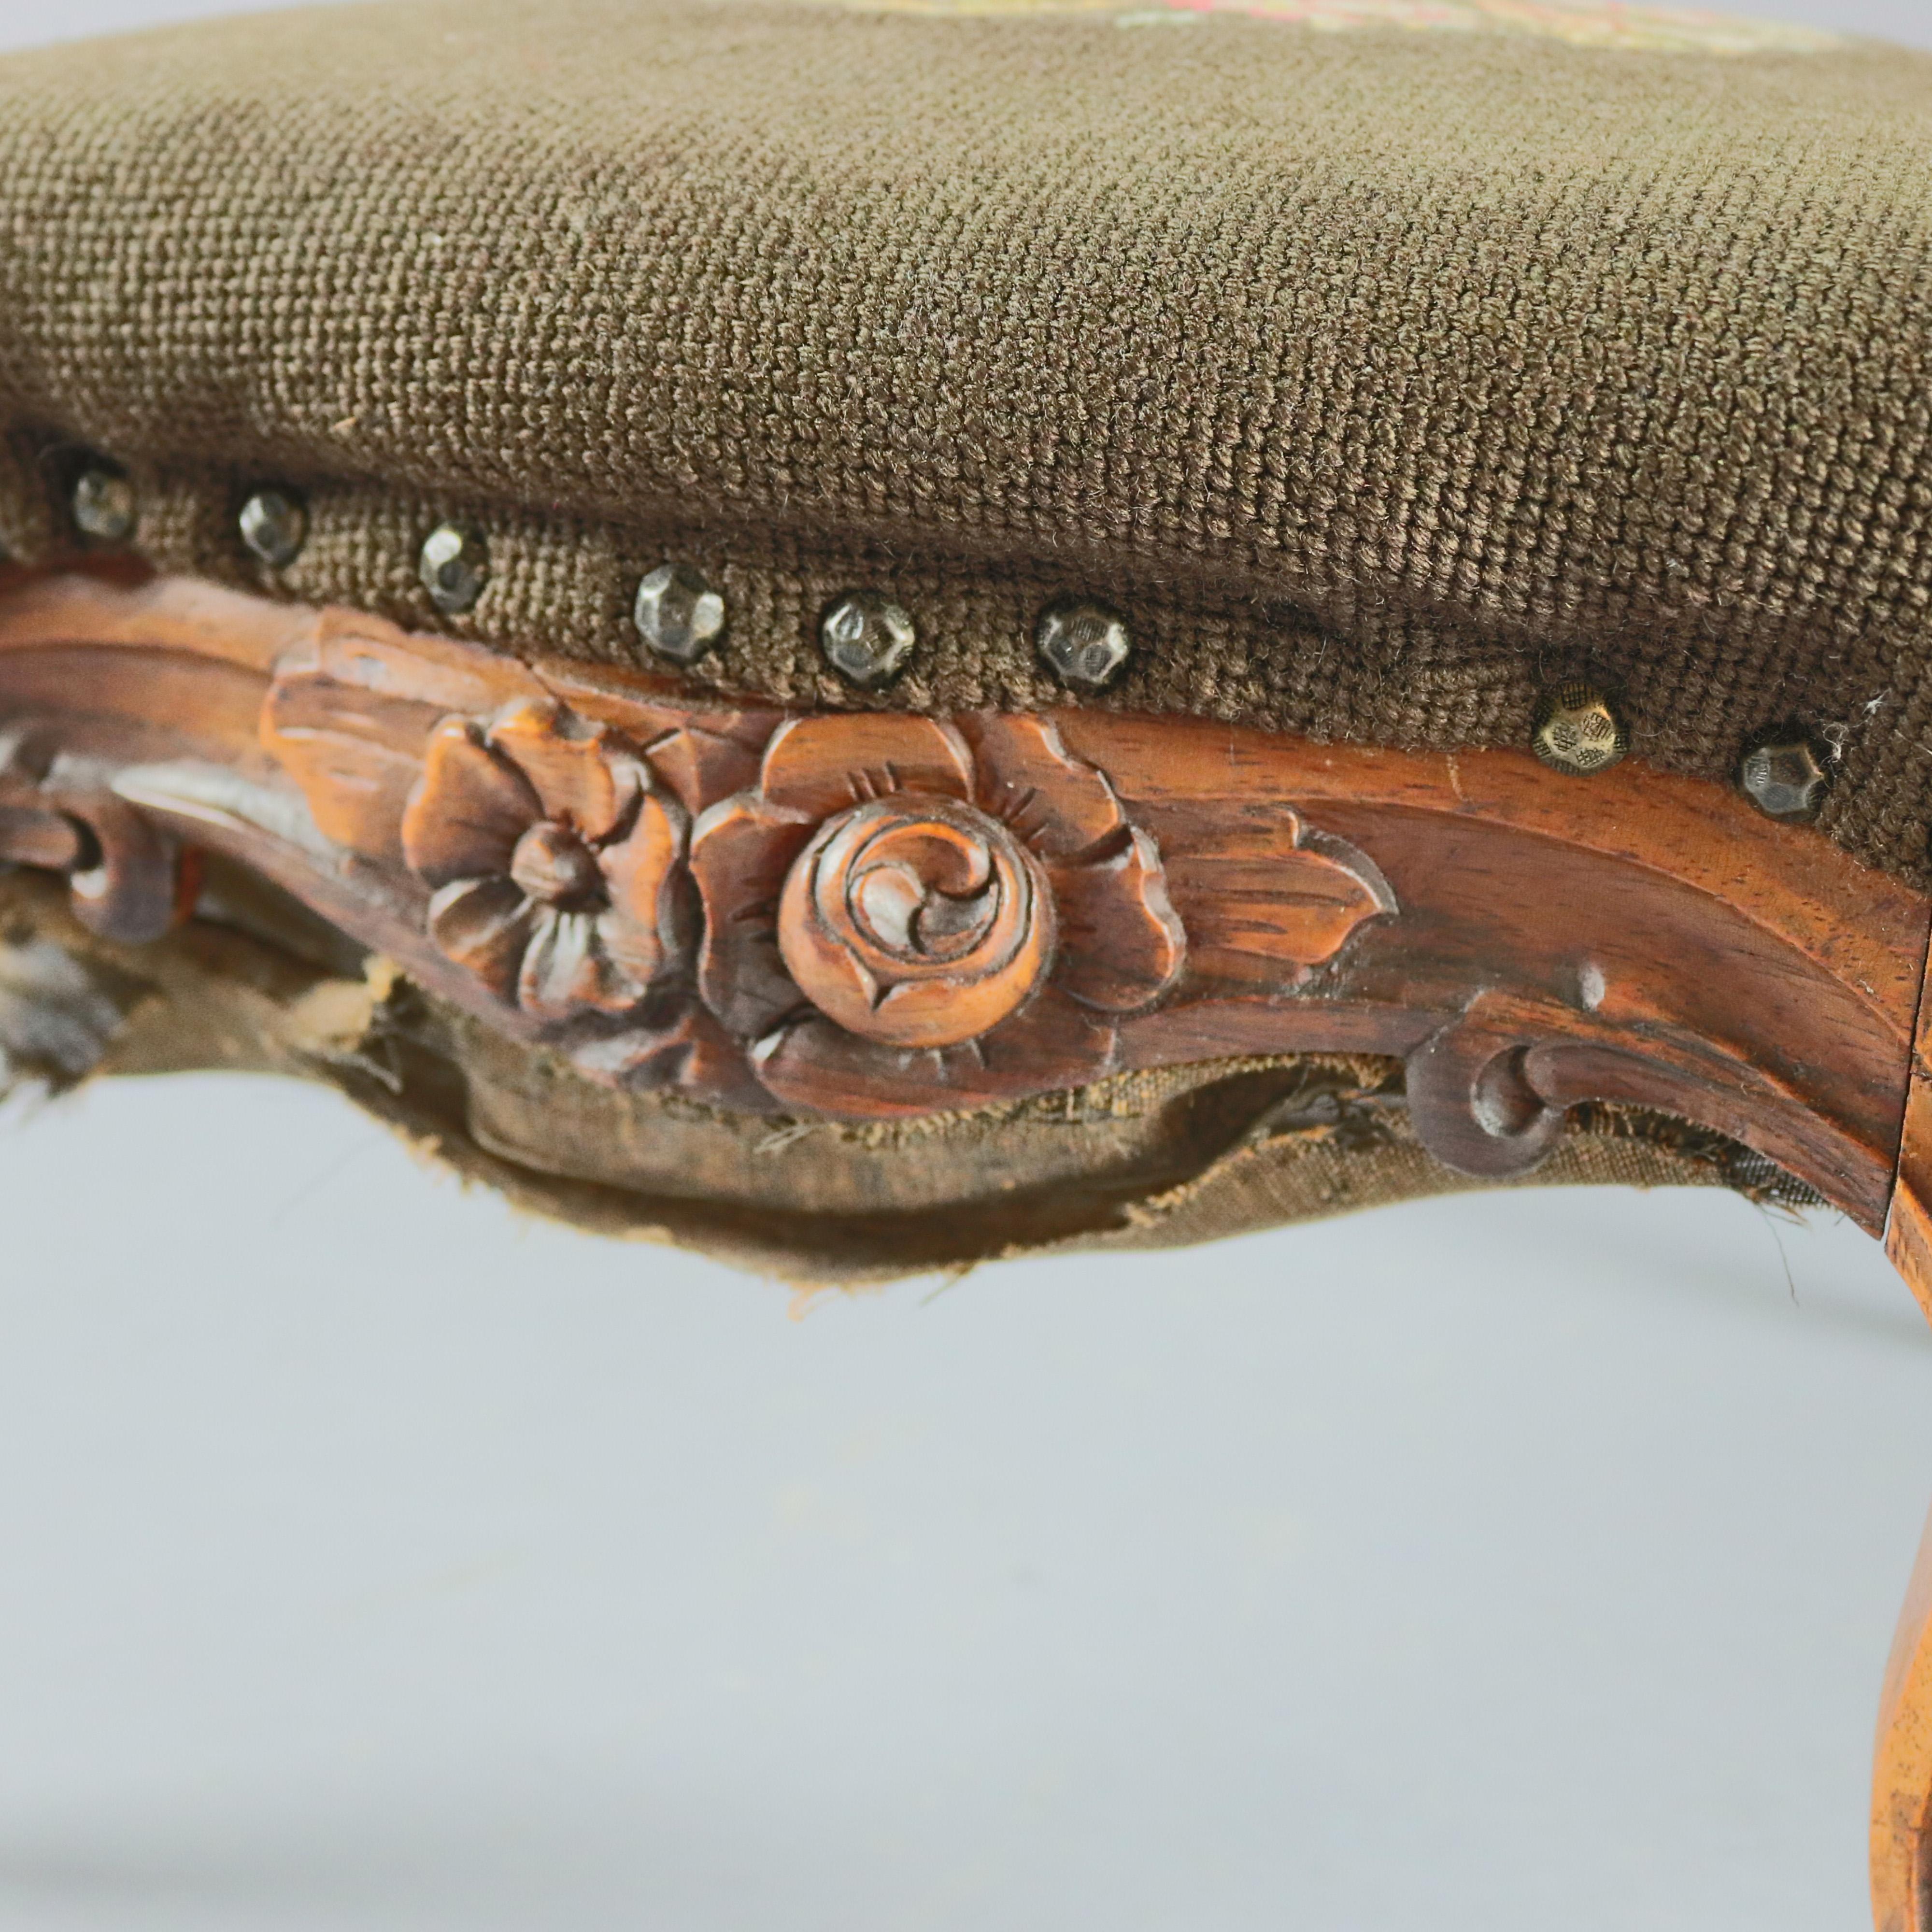 Ein antiker französischer Louis XV Fußschemel bietet Obstholz Basis mit geschnitzten floralen Rock:: auf Cabriole Beine mit Rollen erhöht:: und Sitz gepolstert in floralen Nadelspitze:: 19. Jahrhundert

***LIEFERUNG HINWEIS - Aufgrund der COVID-19